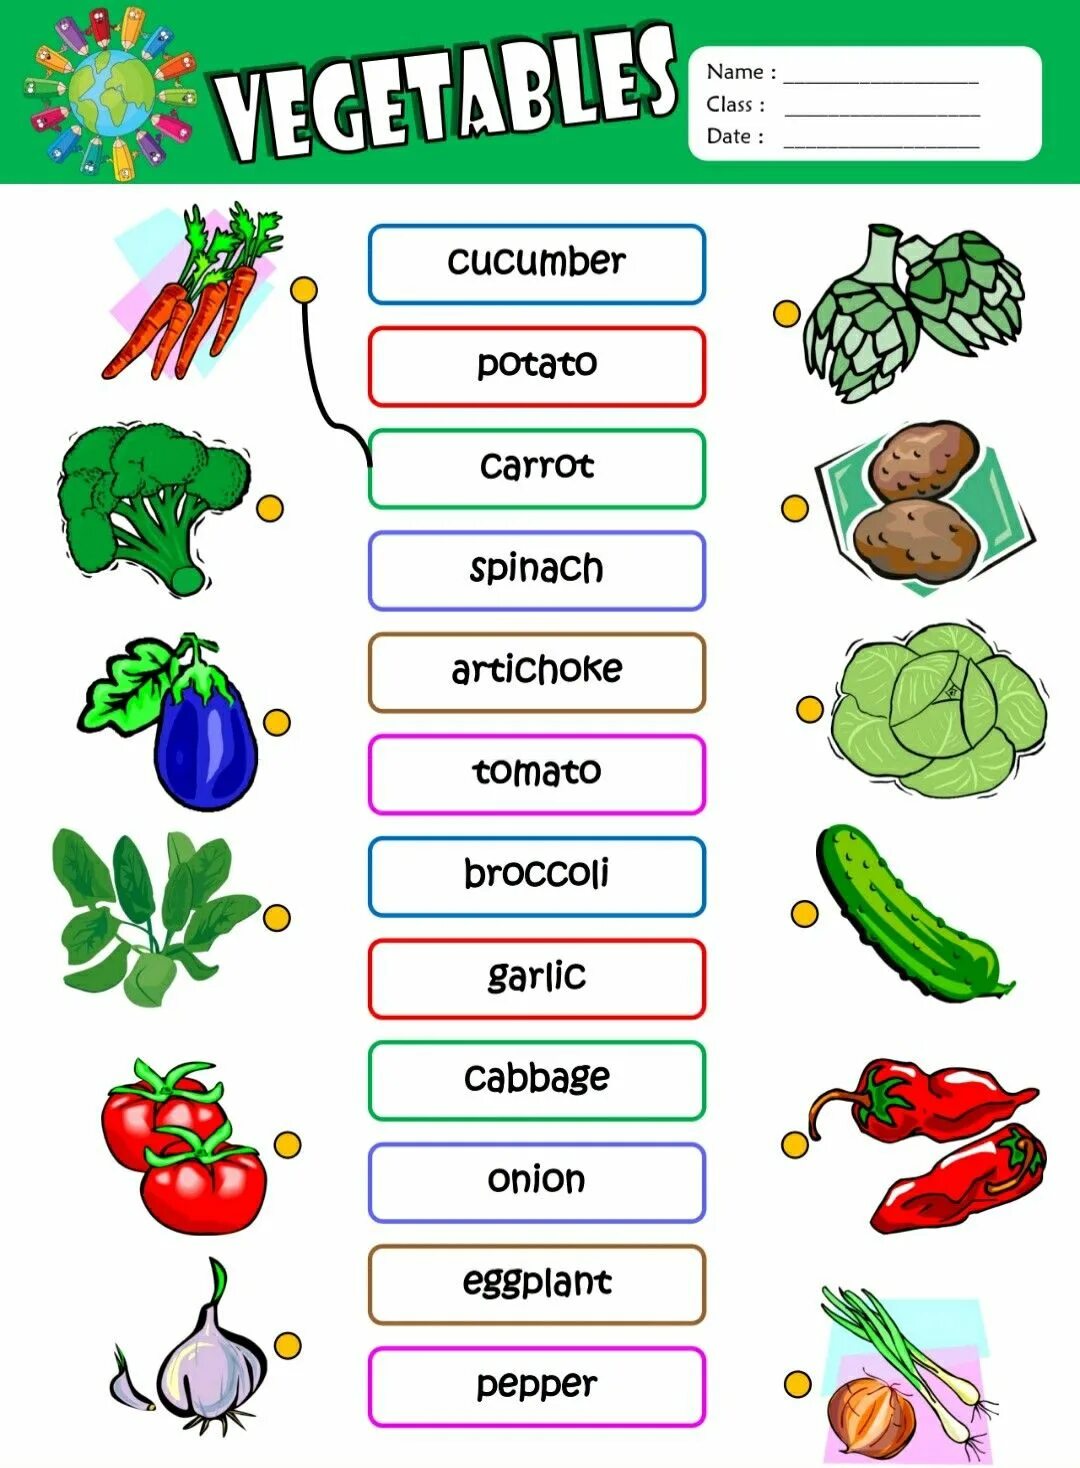 Find vegetables. Vegetables задания для детей. Задания по английскому языку овощи. Fruits and Vegetables задания для детей. Овощи на английском языке для детей задания.